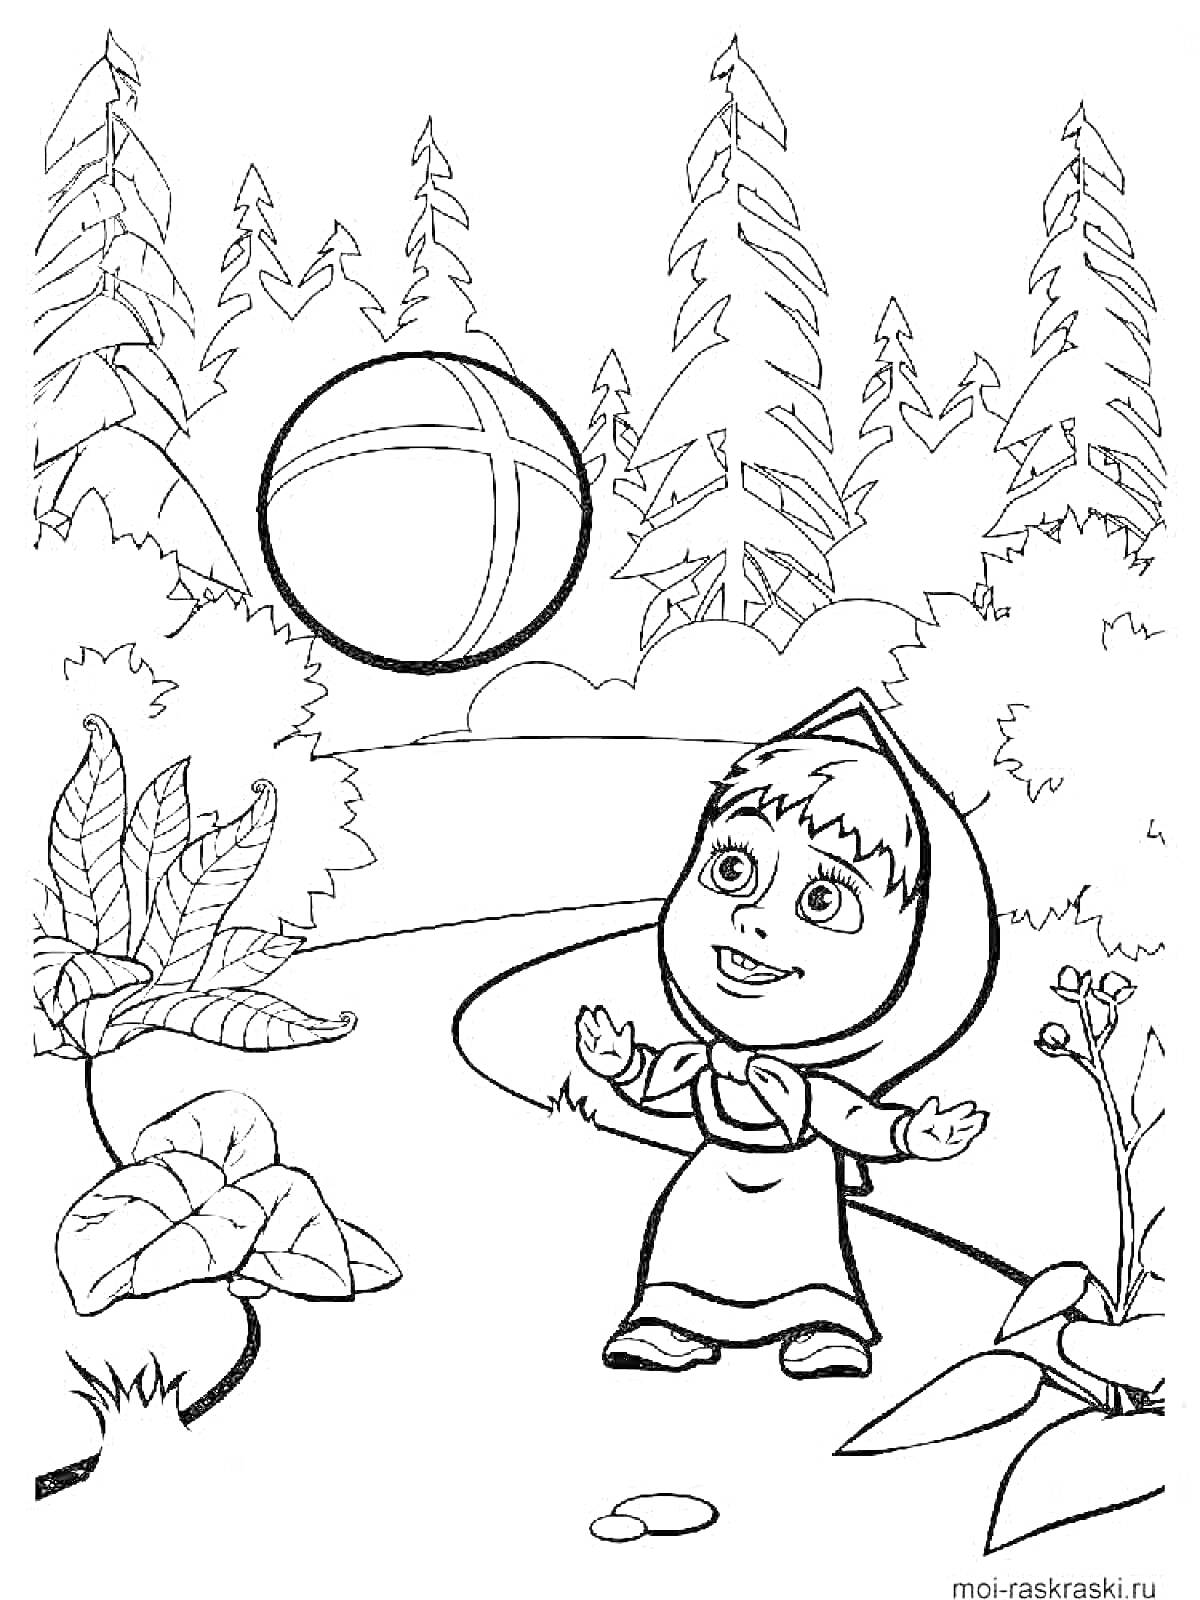 Раскраска Девочка в платке играет с мячом на лесной тропинке